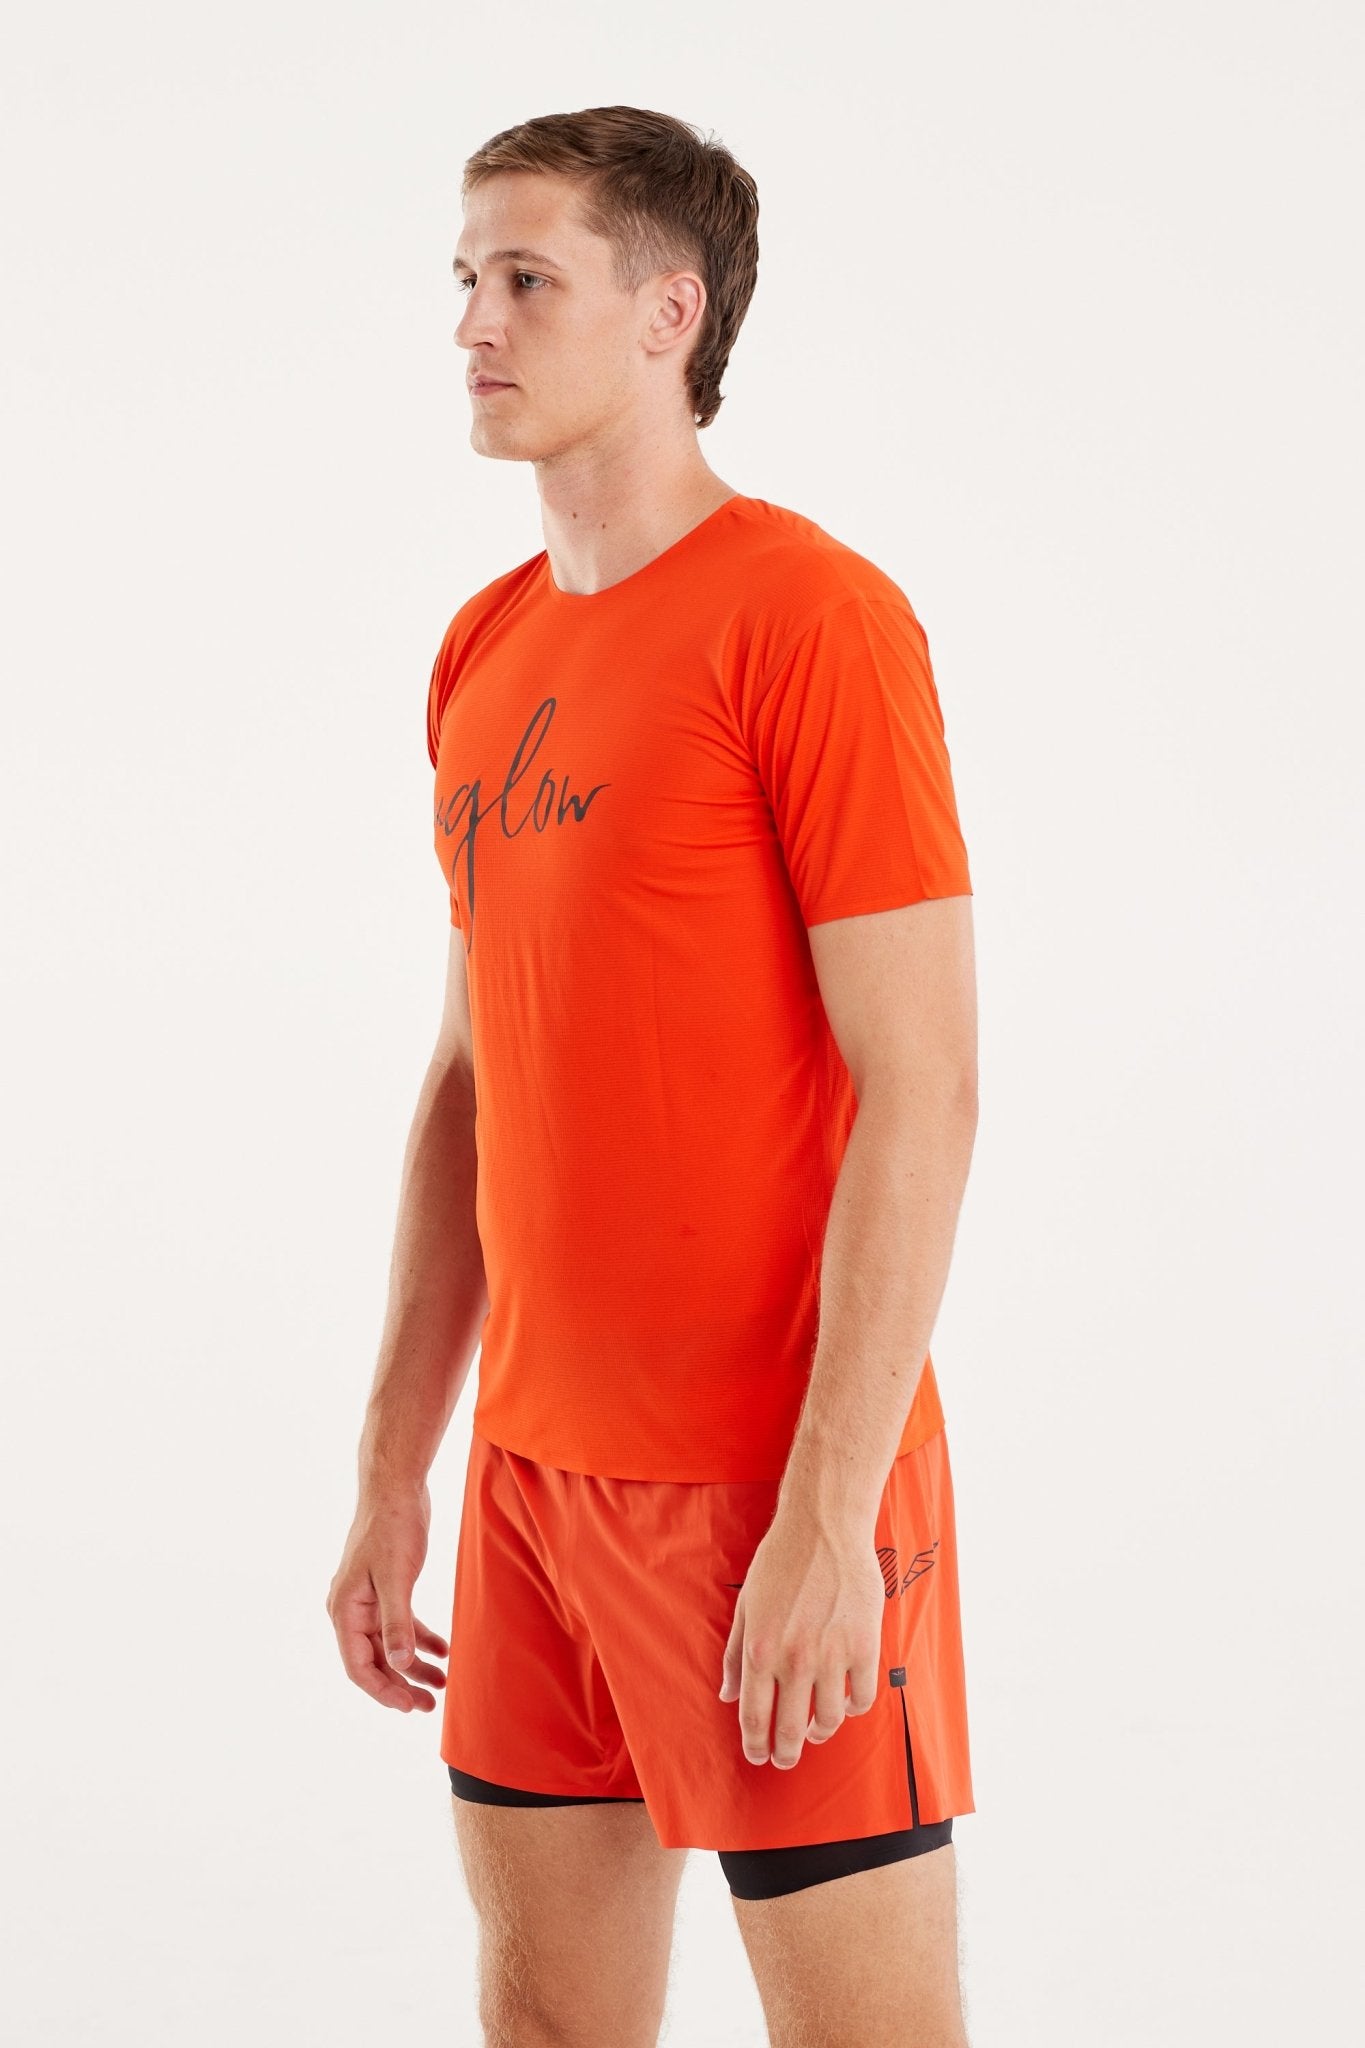 T-Skjorte | SUPER LIGHT TRAIL | Tangerine - GRIT nation Sport